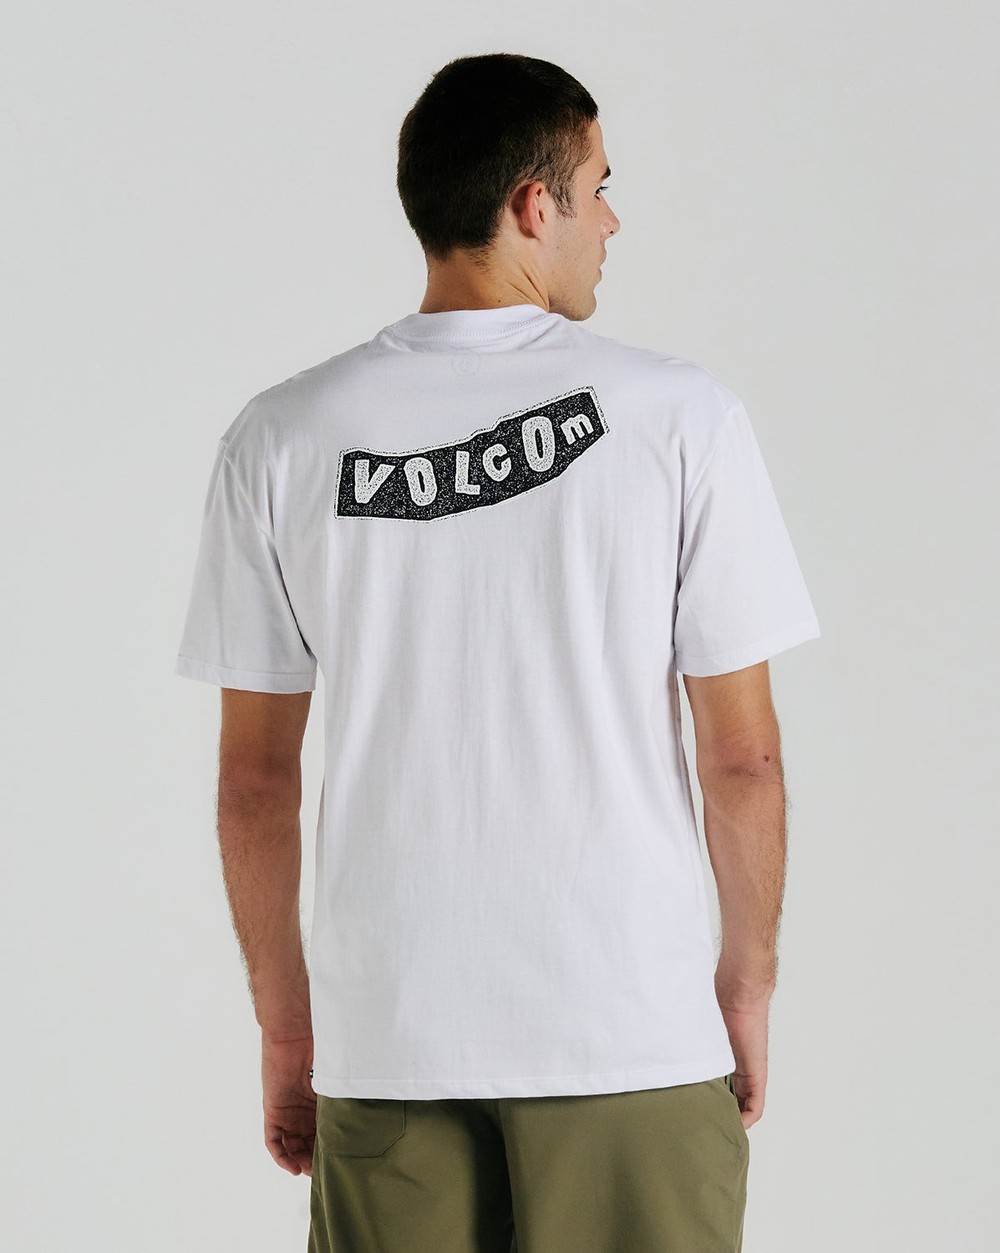 Camiseta Volcom Originator Off White